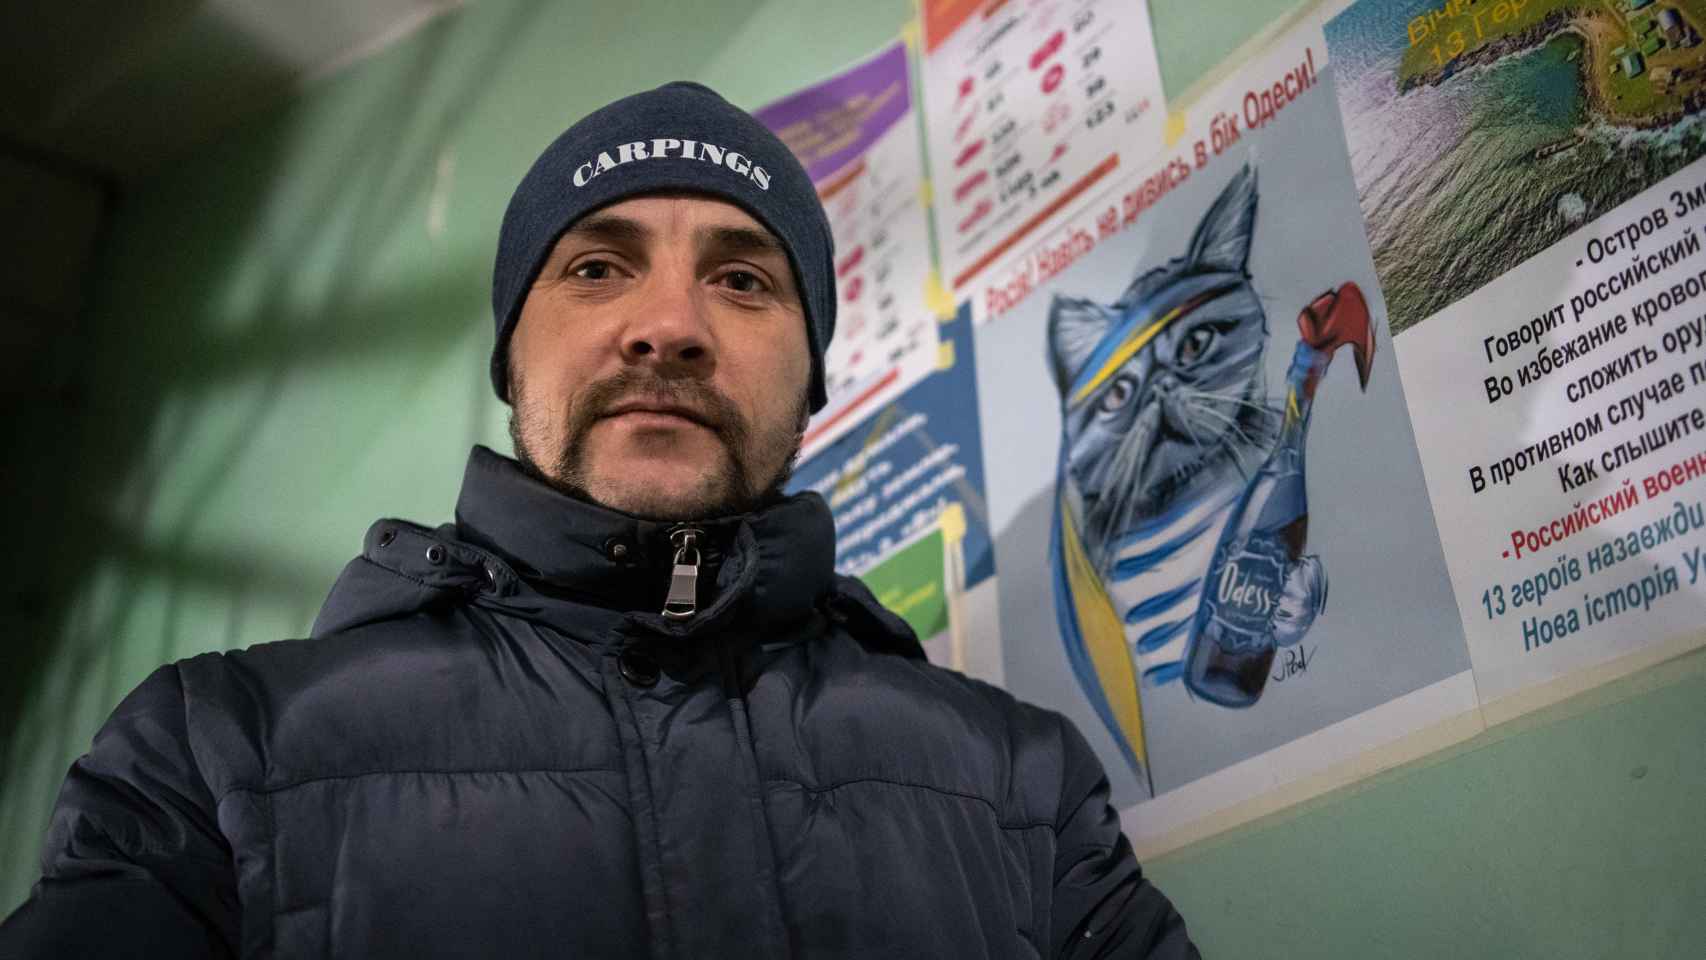 Evgeniy pide salir junto al cartel de un gato con un cóctel molotov que avisa a los rusos de que ya les están esperando.